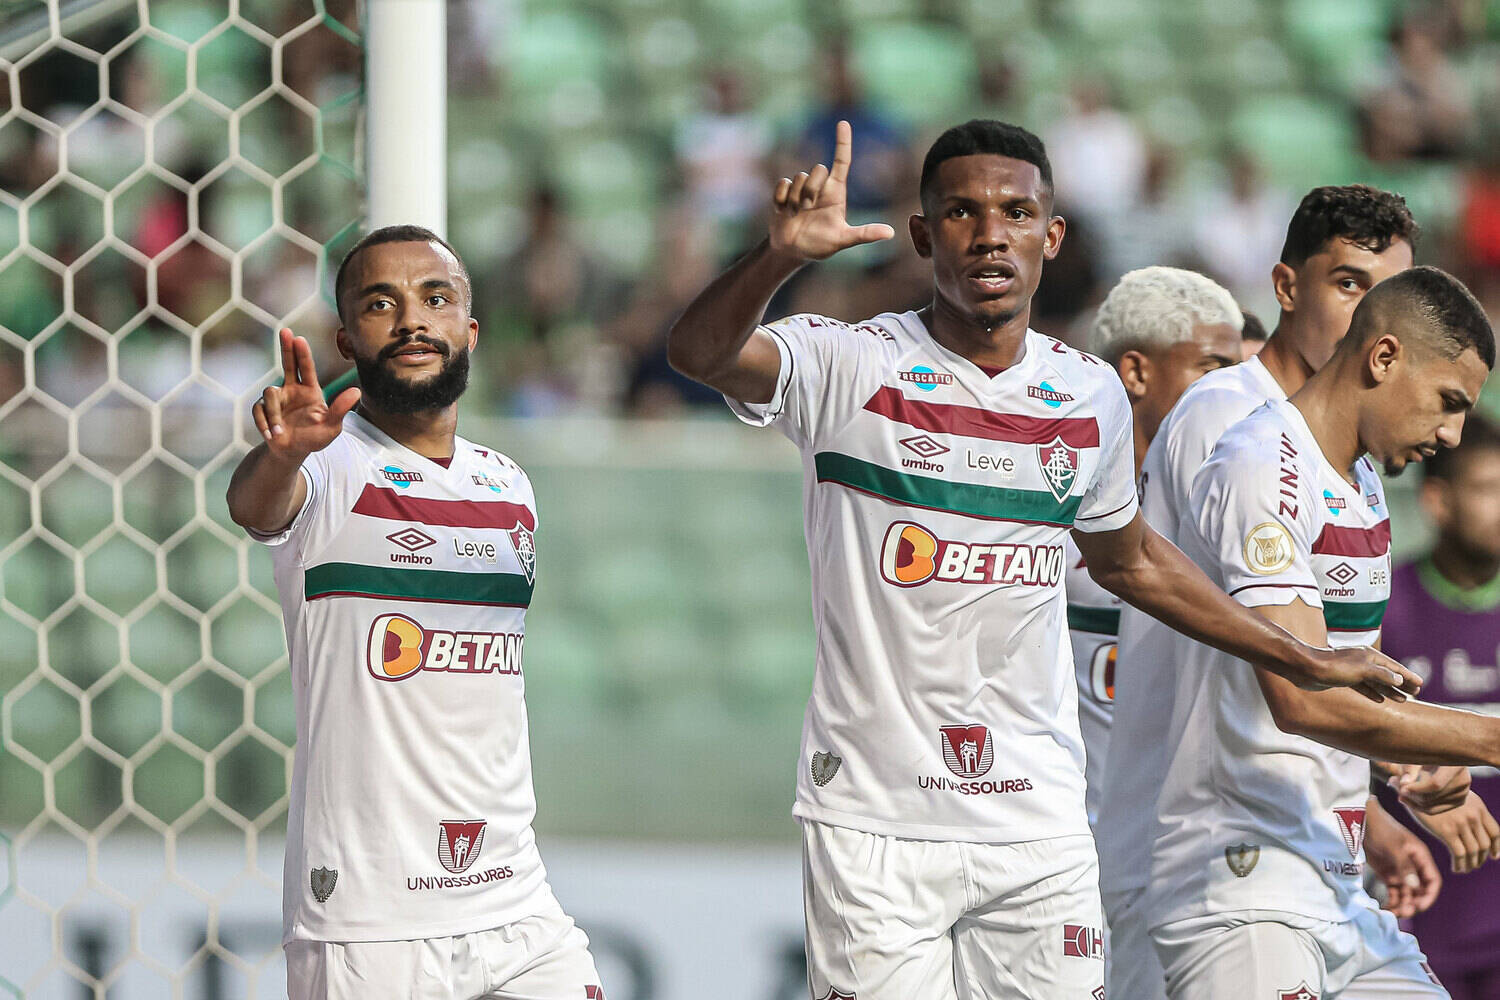 PAPO DE CRAQUE Cerro Porteño vai complicar a vida do Palmeiras na Libe